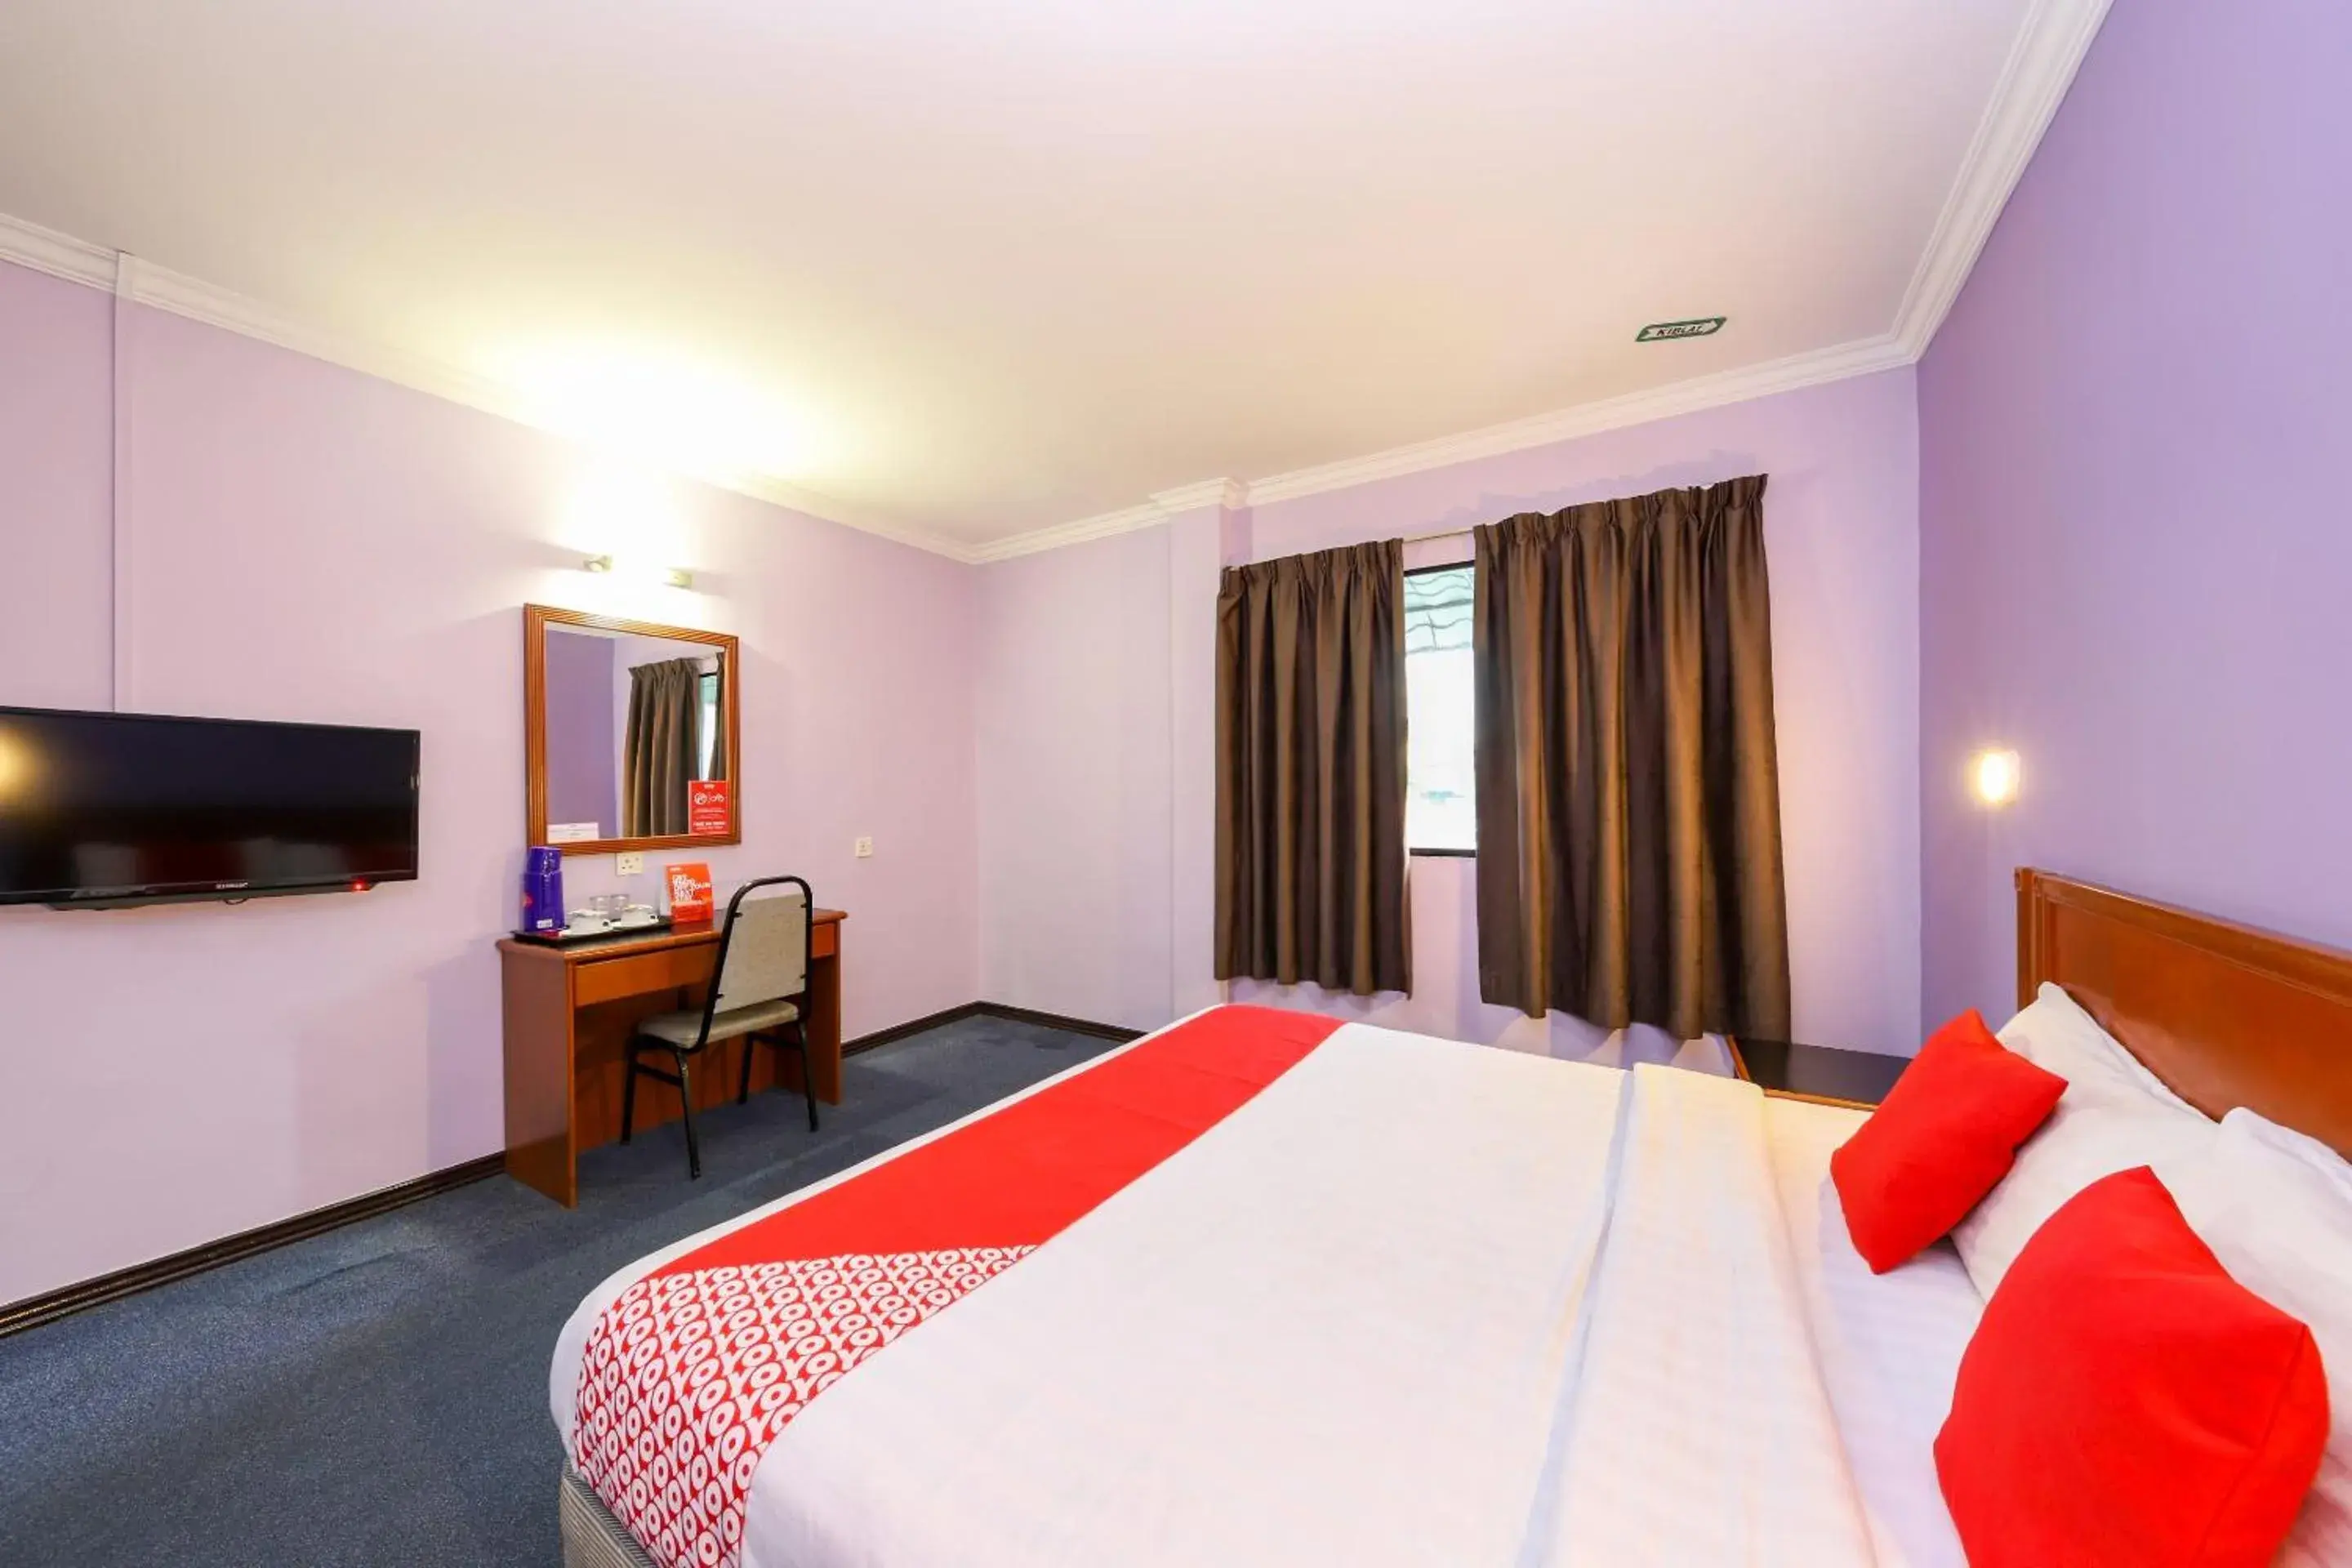 Bedroom, TV/Entertainment Center in OYO 472 Comfort Hotel 1